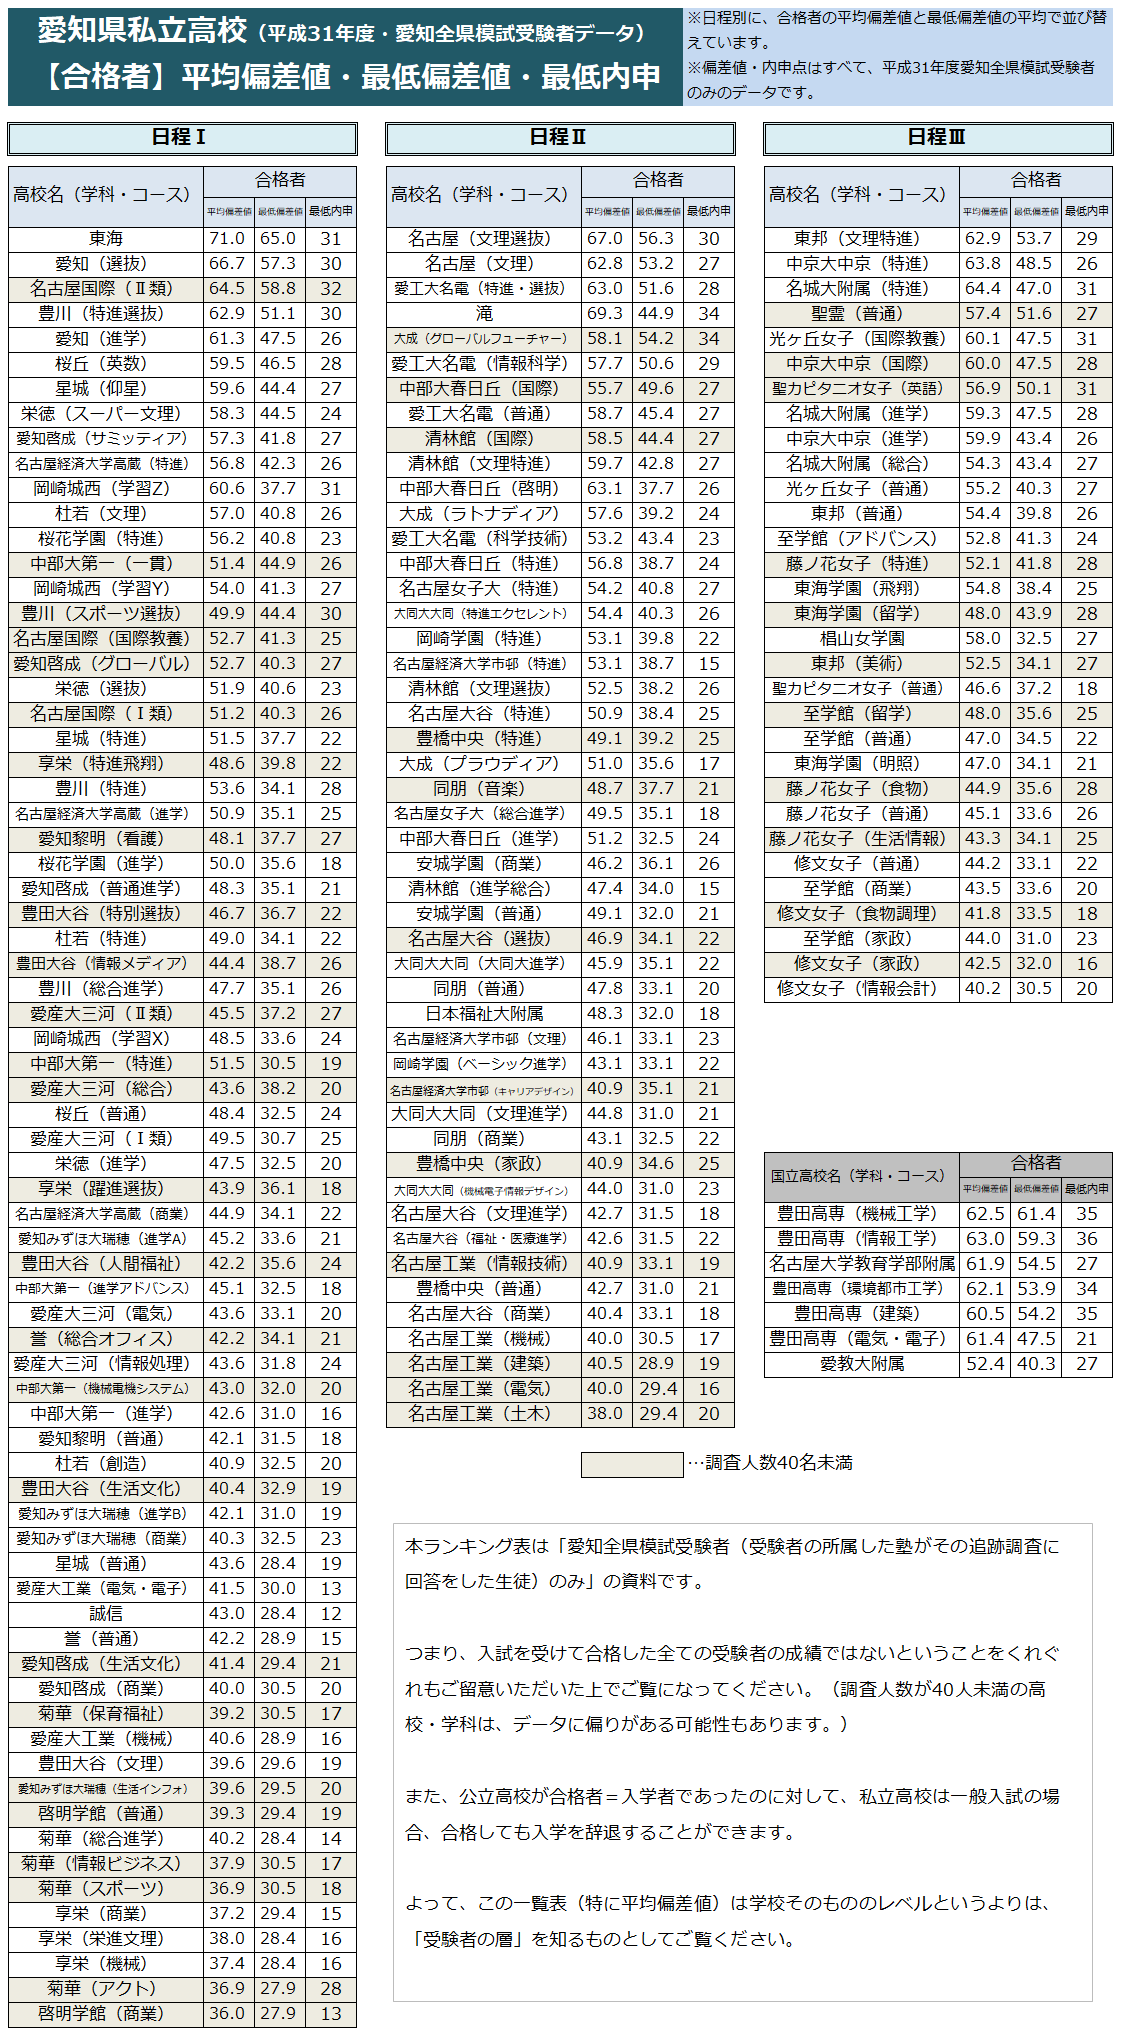 愛知県私立高校ランキング2019／合格者平均偏差値・最低偏差値・最低内申 | 学習塾カレッジ塾長 エッセイブログ